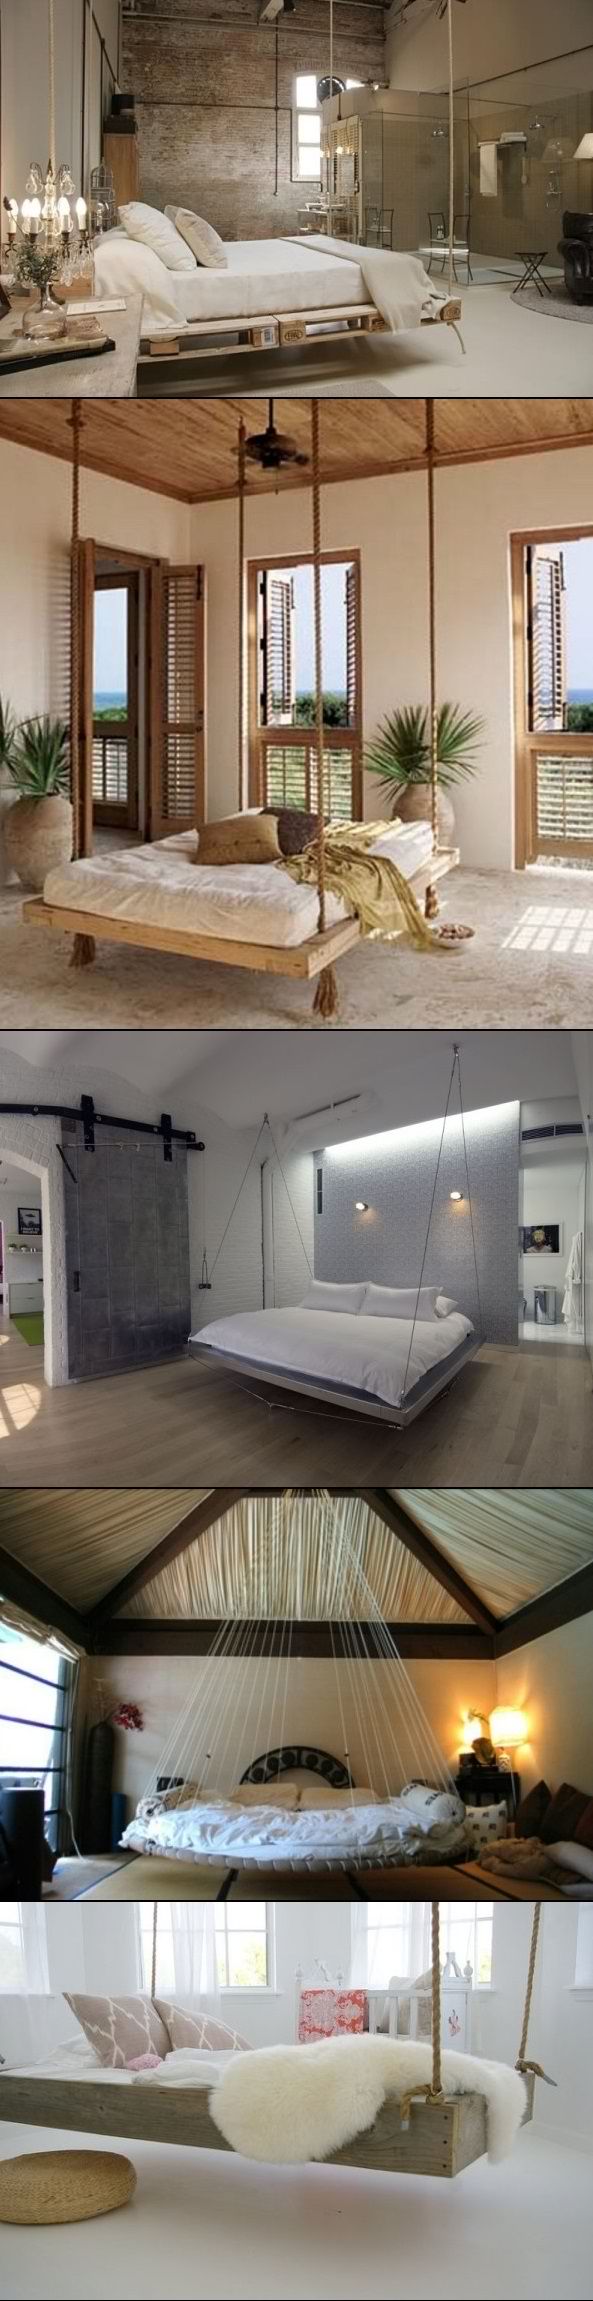 DIY Hanging Bedroom Beds